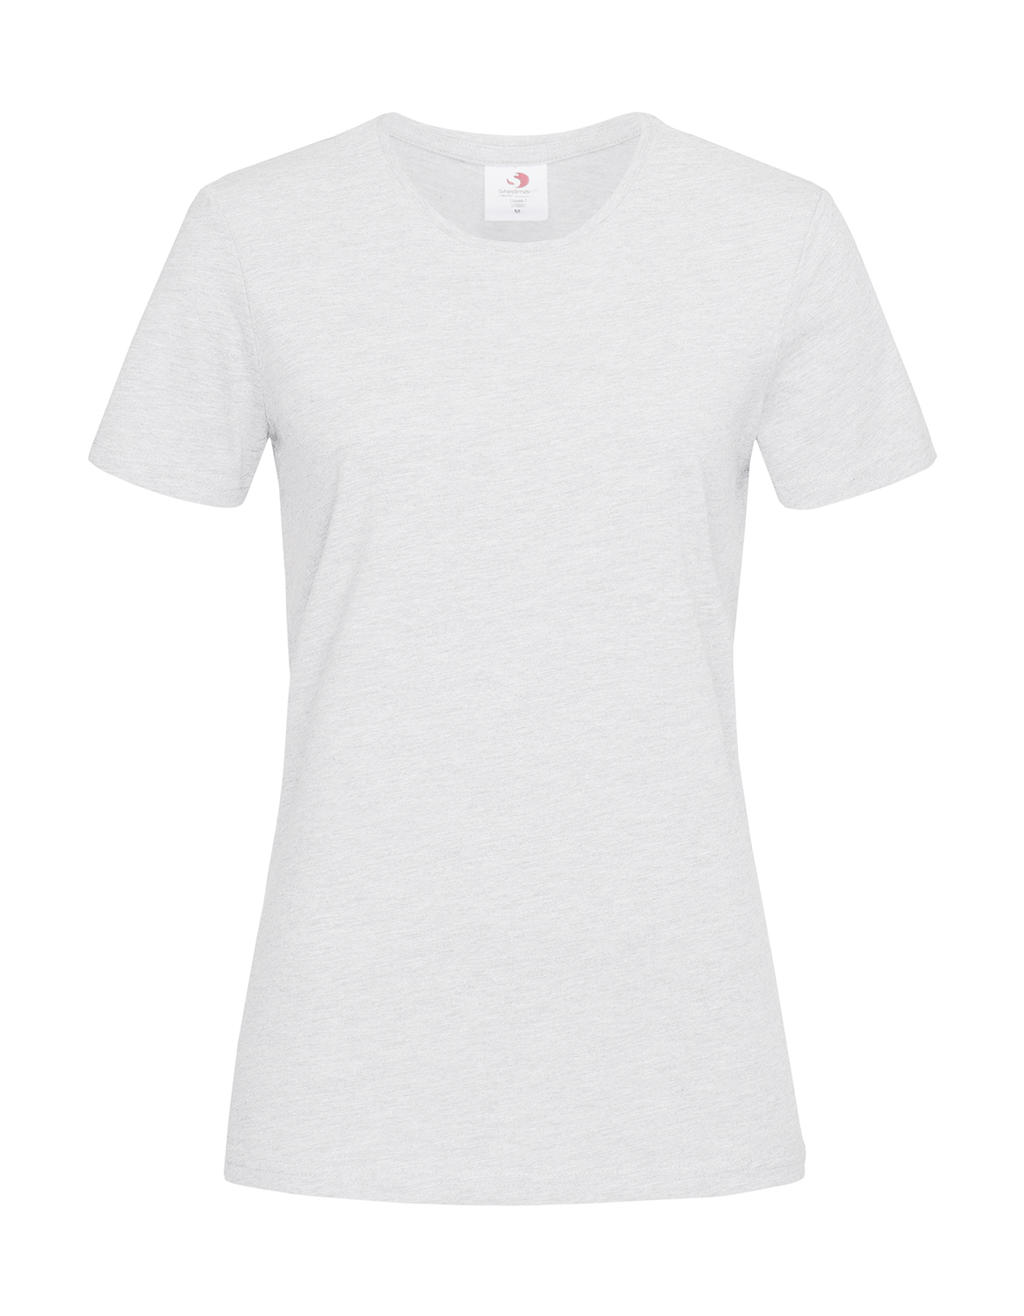 Tričko dámské Stedman Fitted s kulatým výstřihem - bílé-šedé, XL